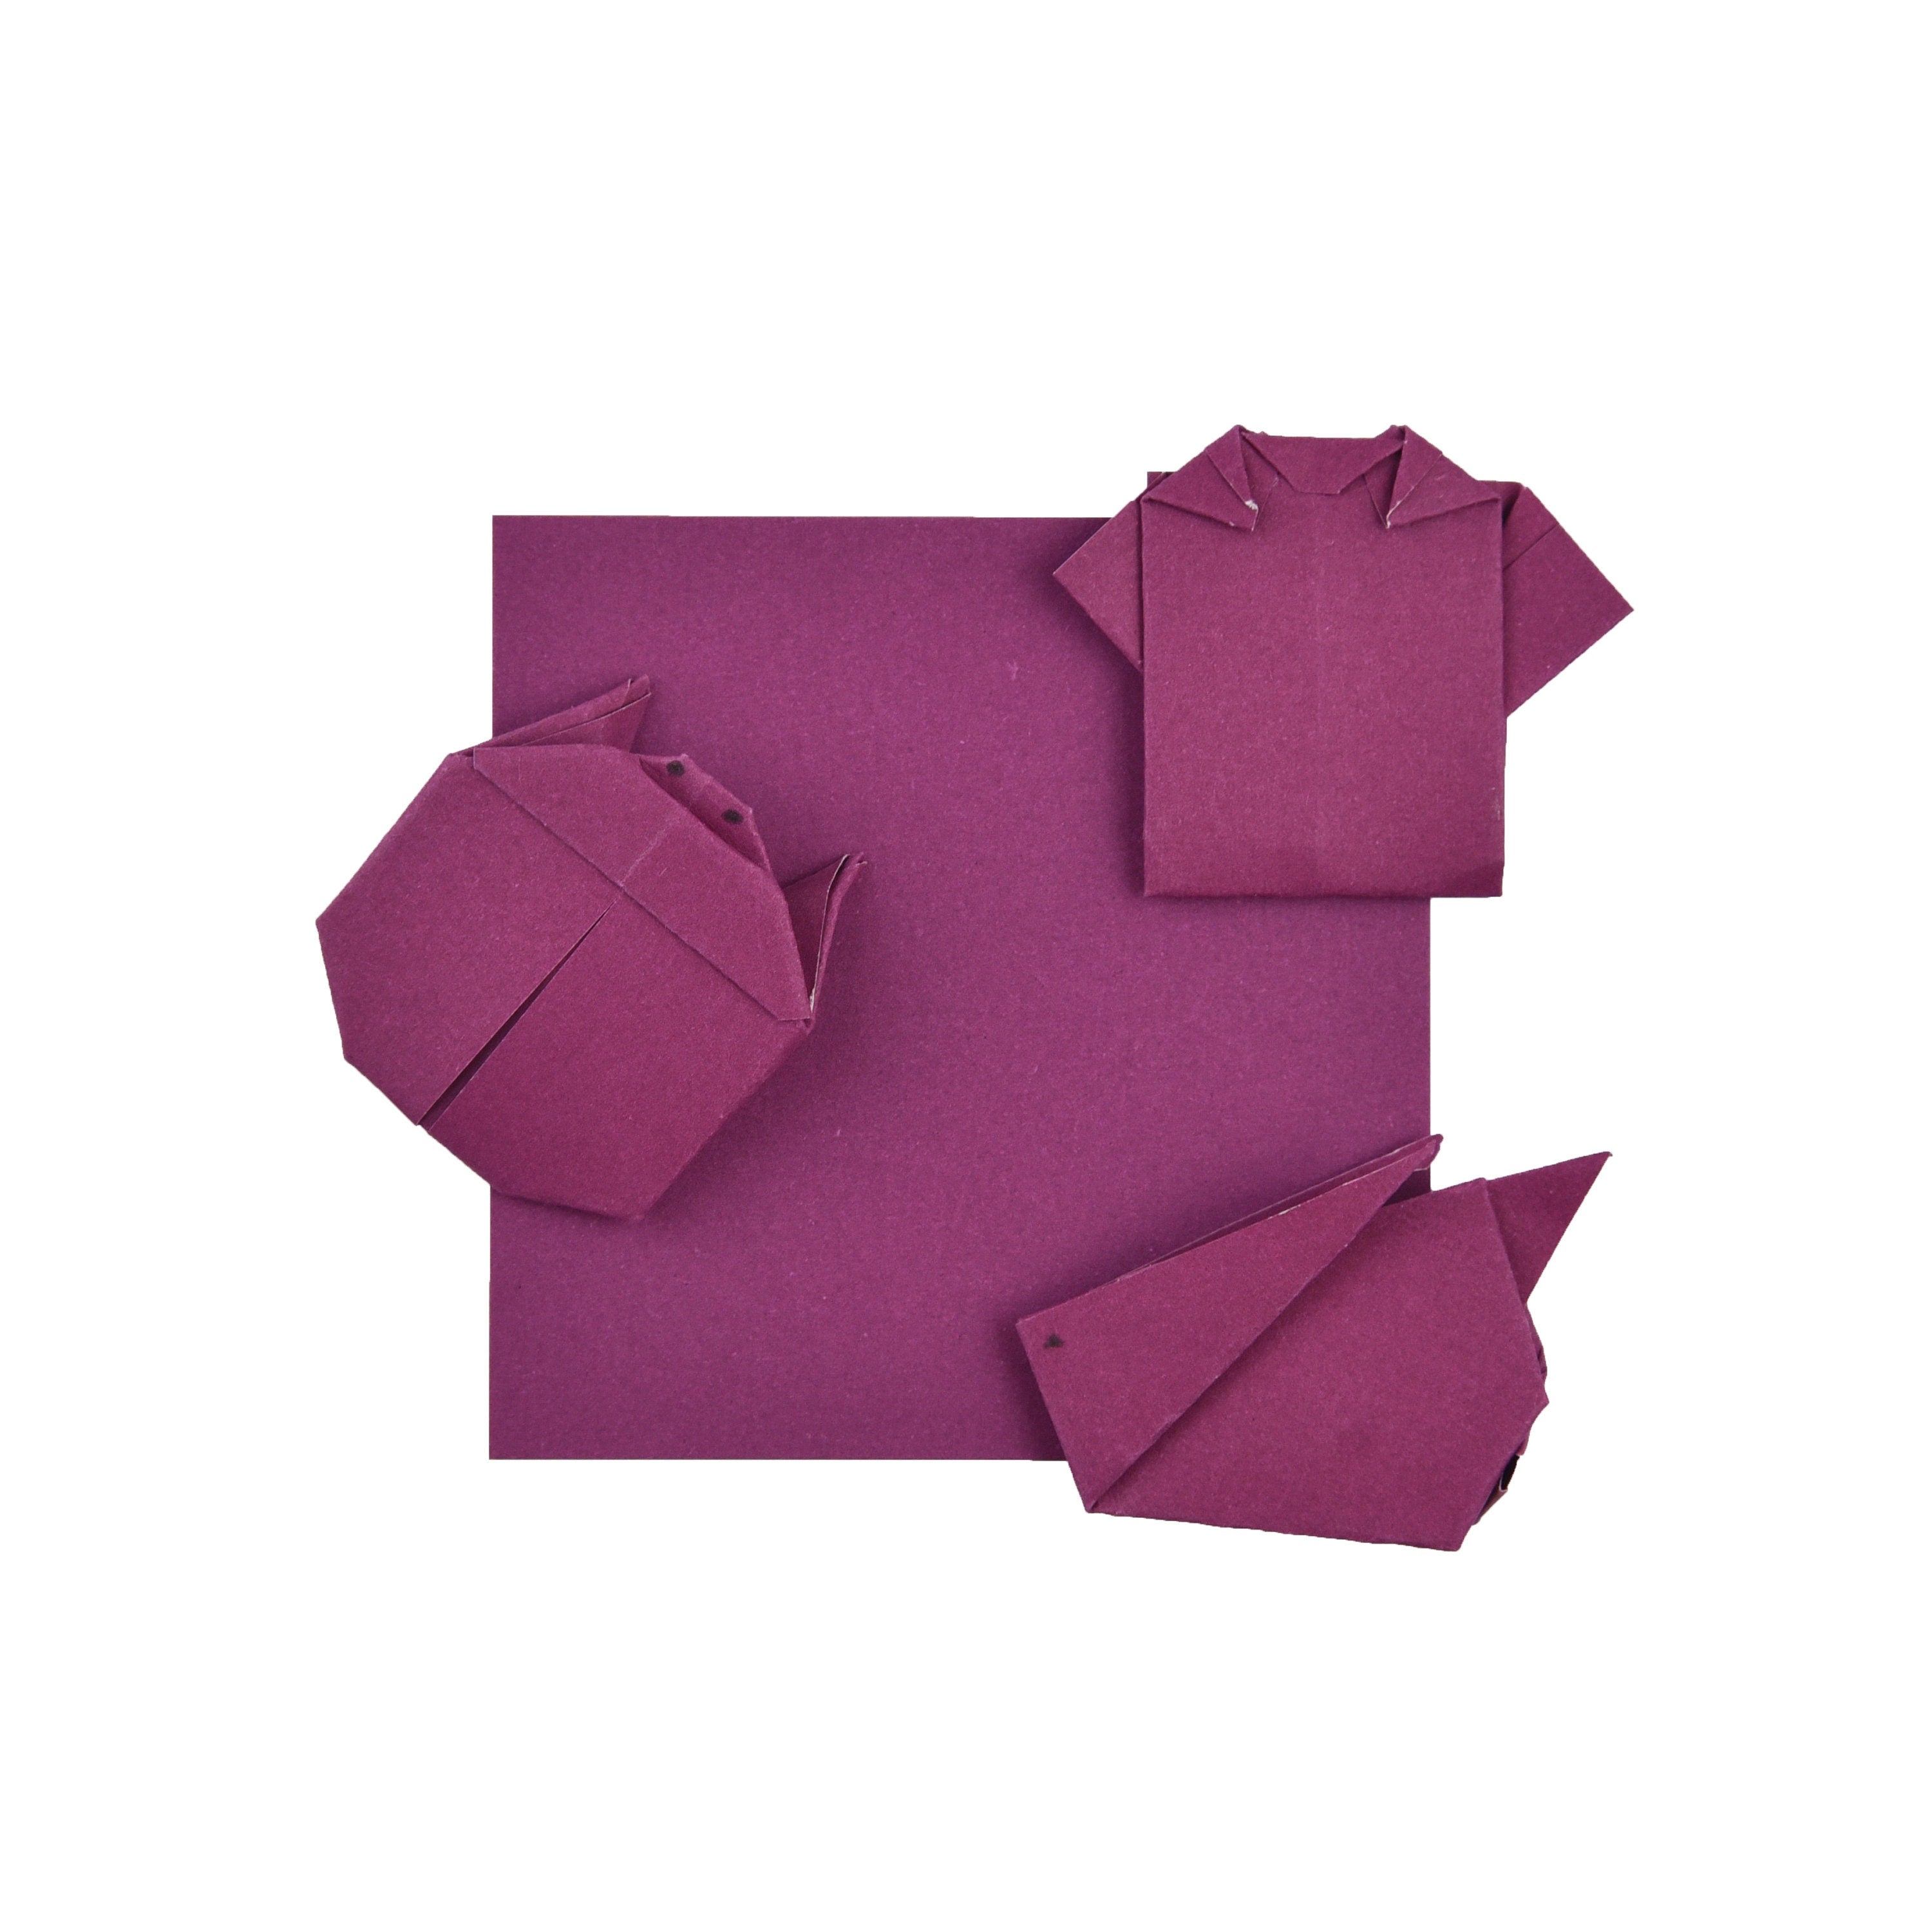 100 fogli di carta origami bordeaux - 6x6 pollici - confezione di carta quadrata per piegare, gru origami e decorazioni - S09